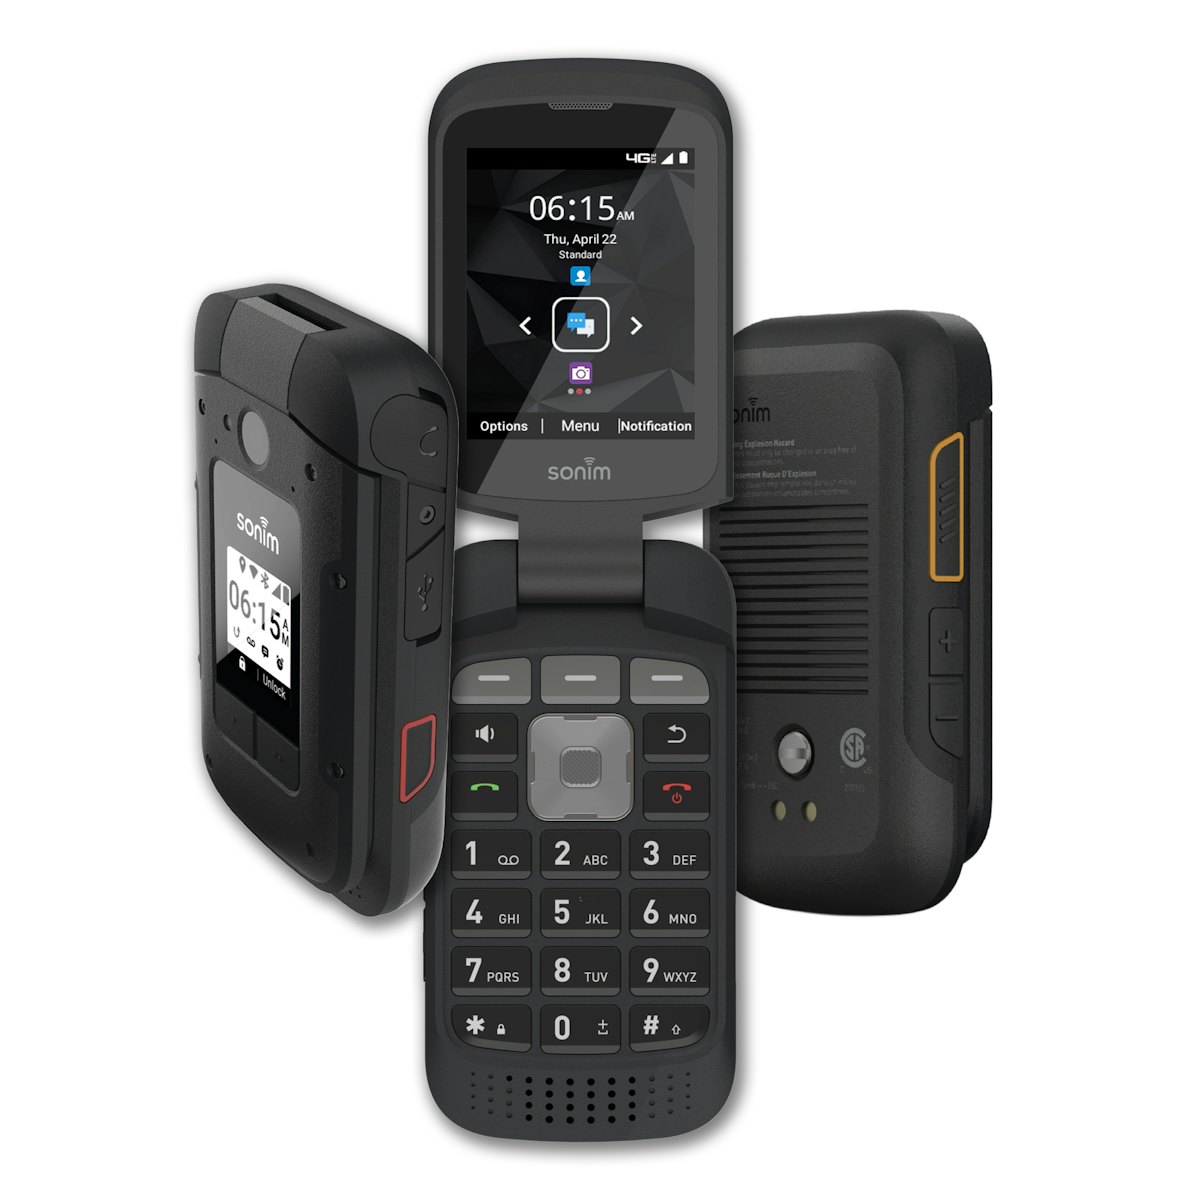 Sonim Xp3plus Flip Phone Built For Construction Site Equipment World